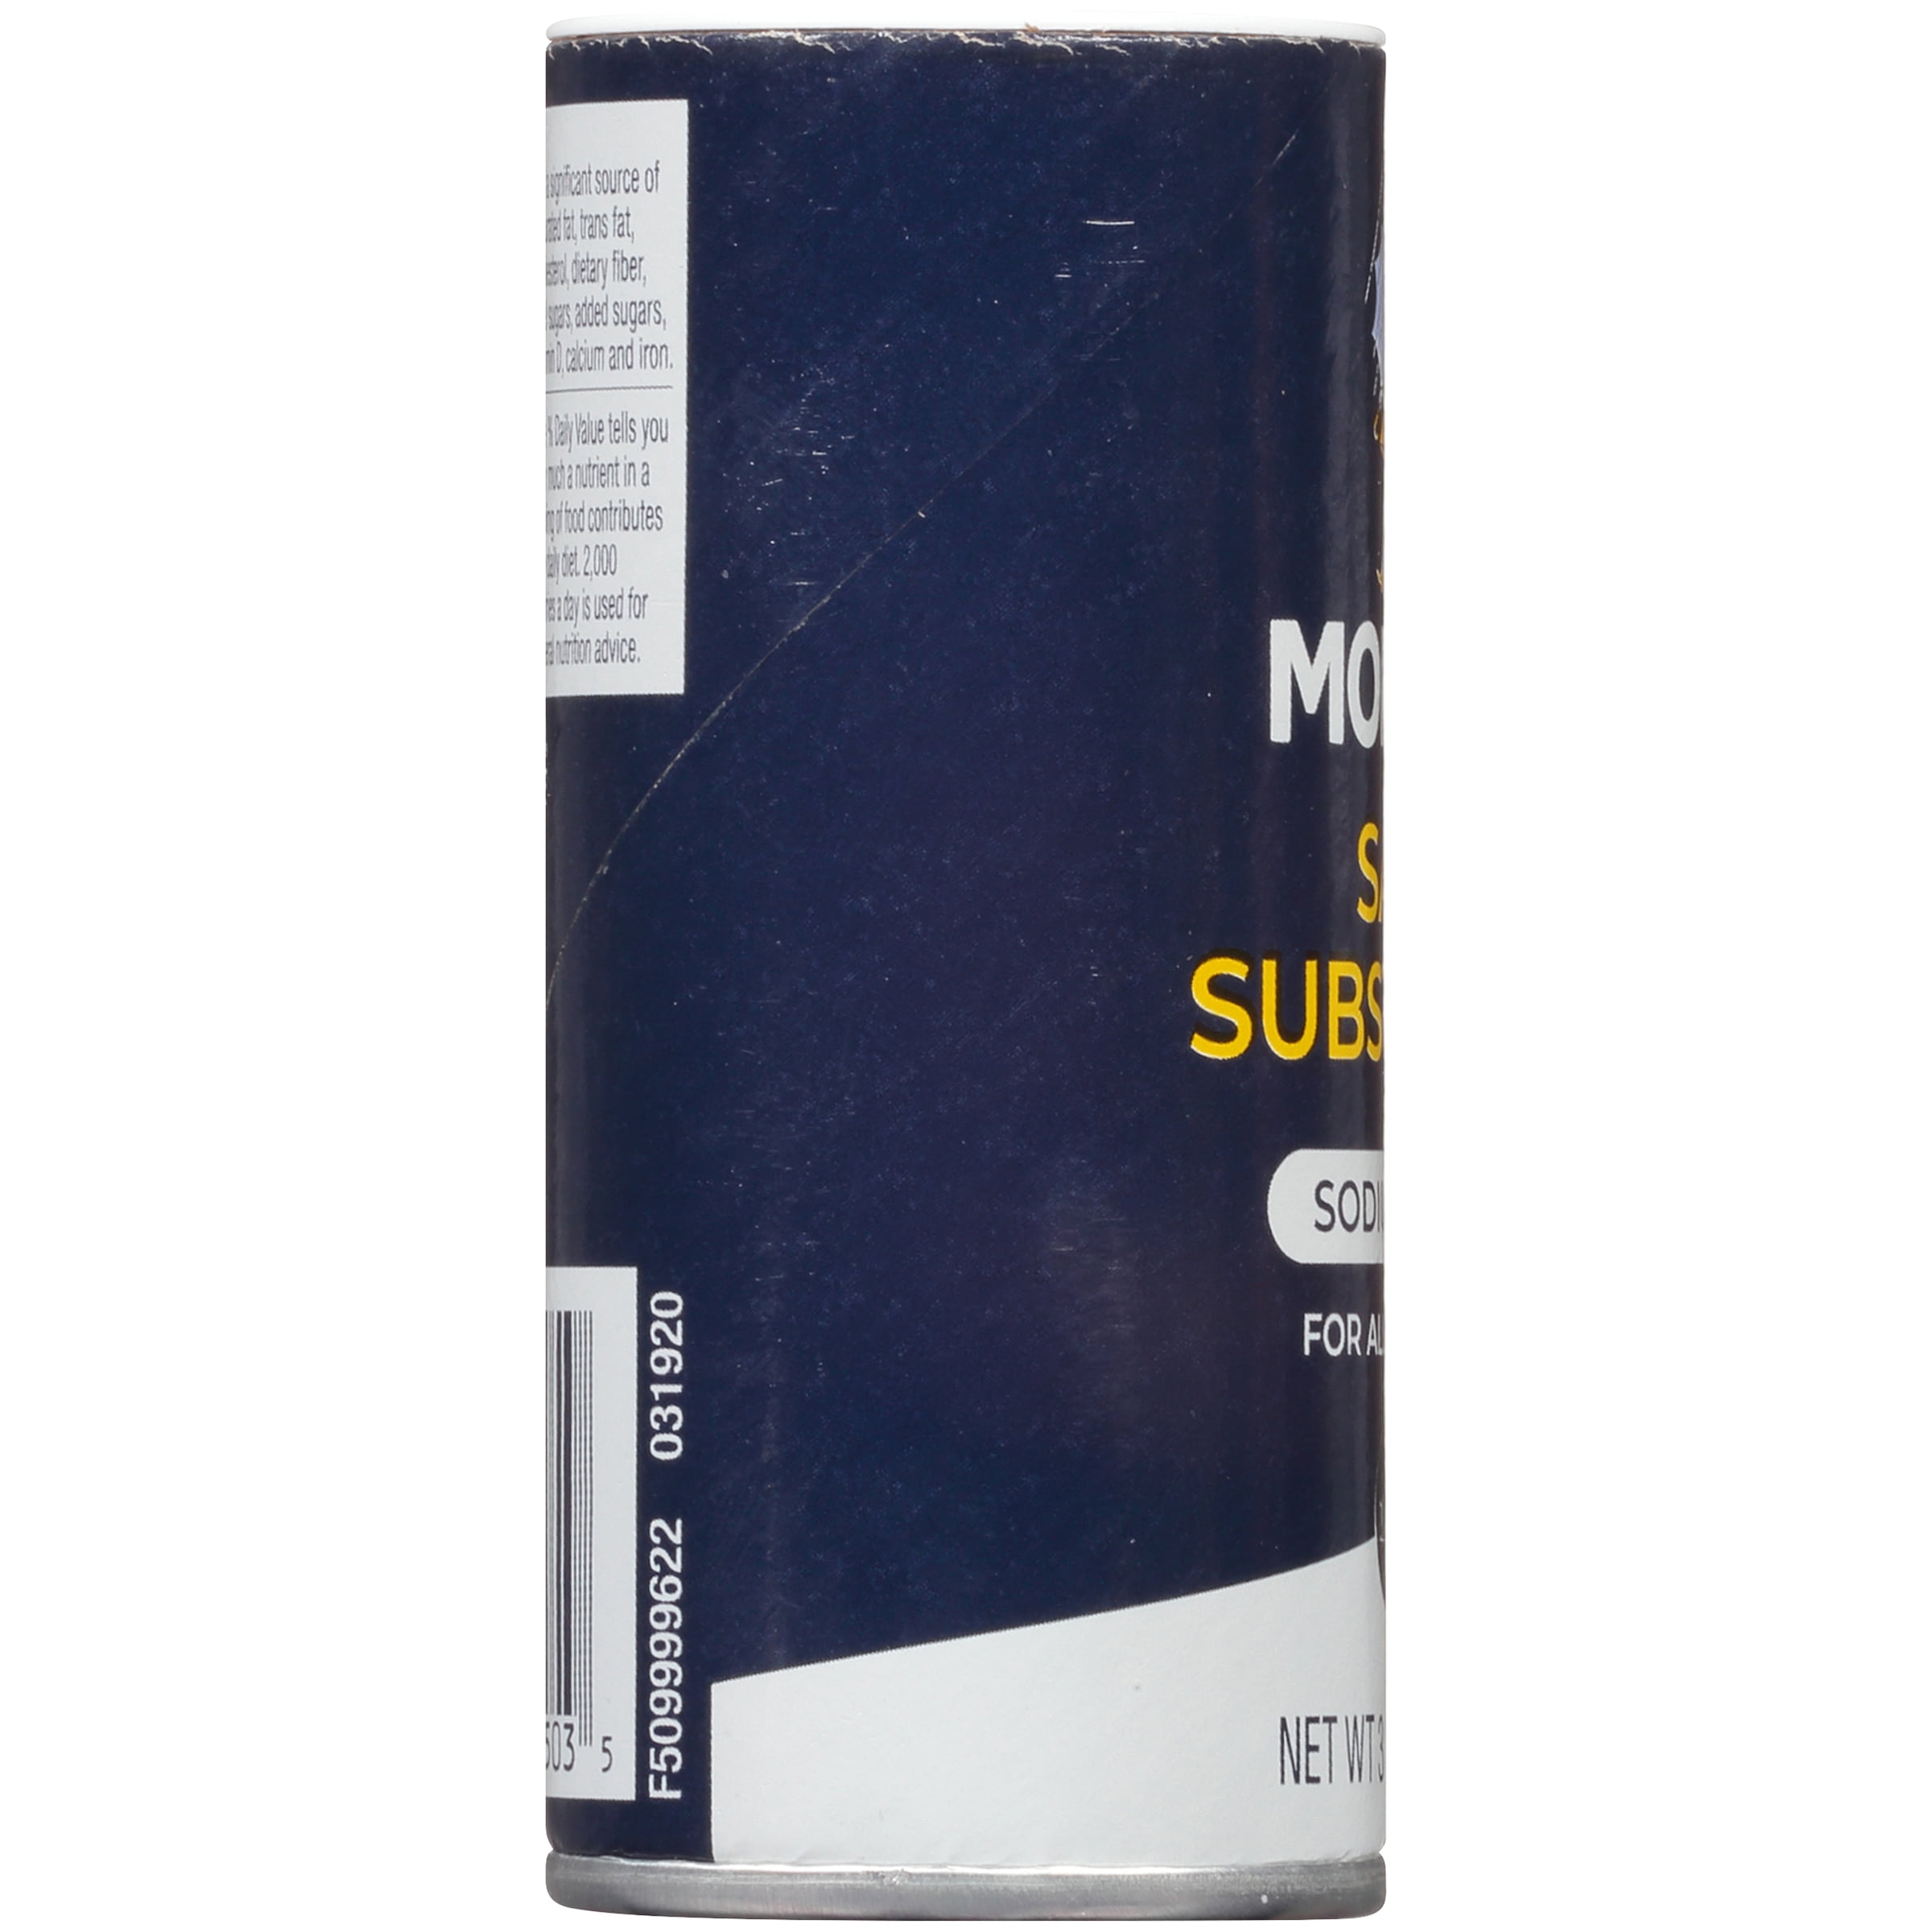 Morton® Sodium Free Salt Substitute, 3.13 oz - Harris Teeter